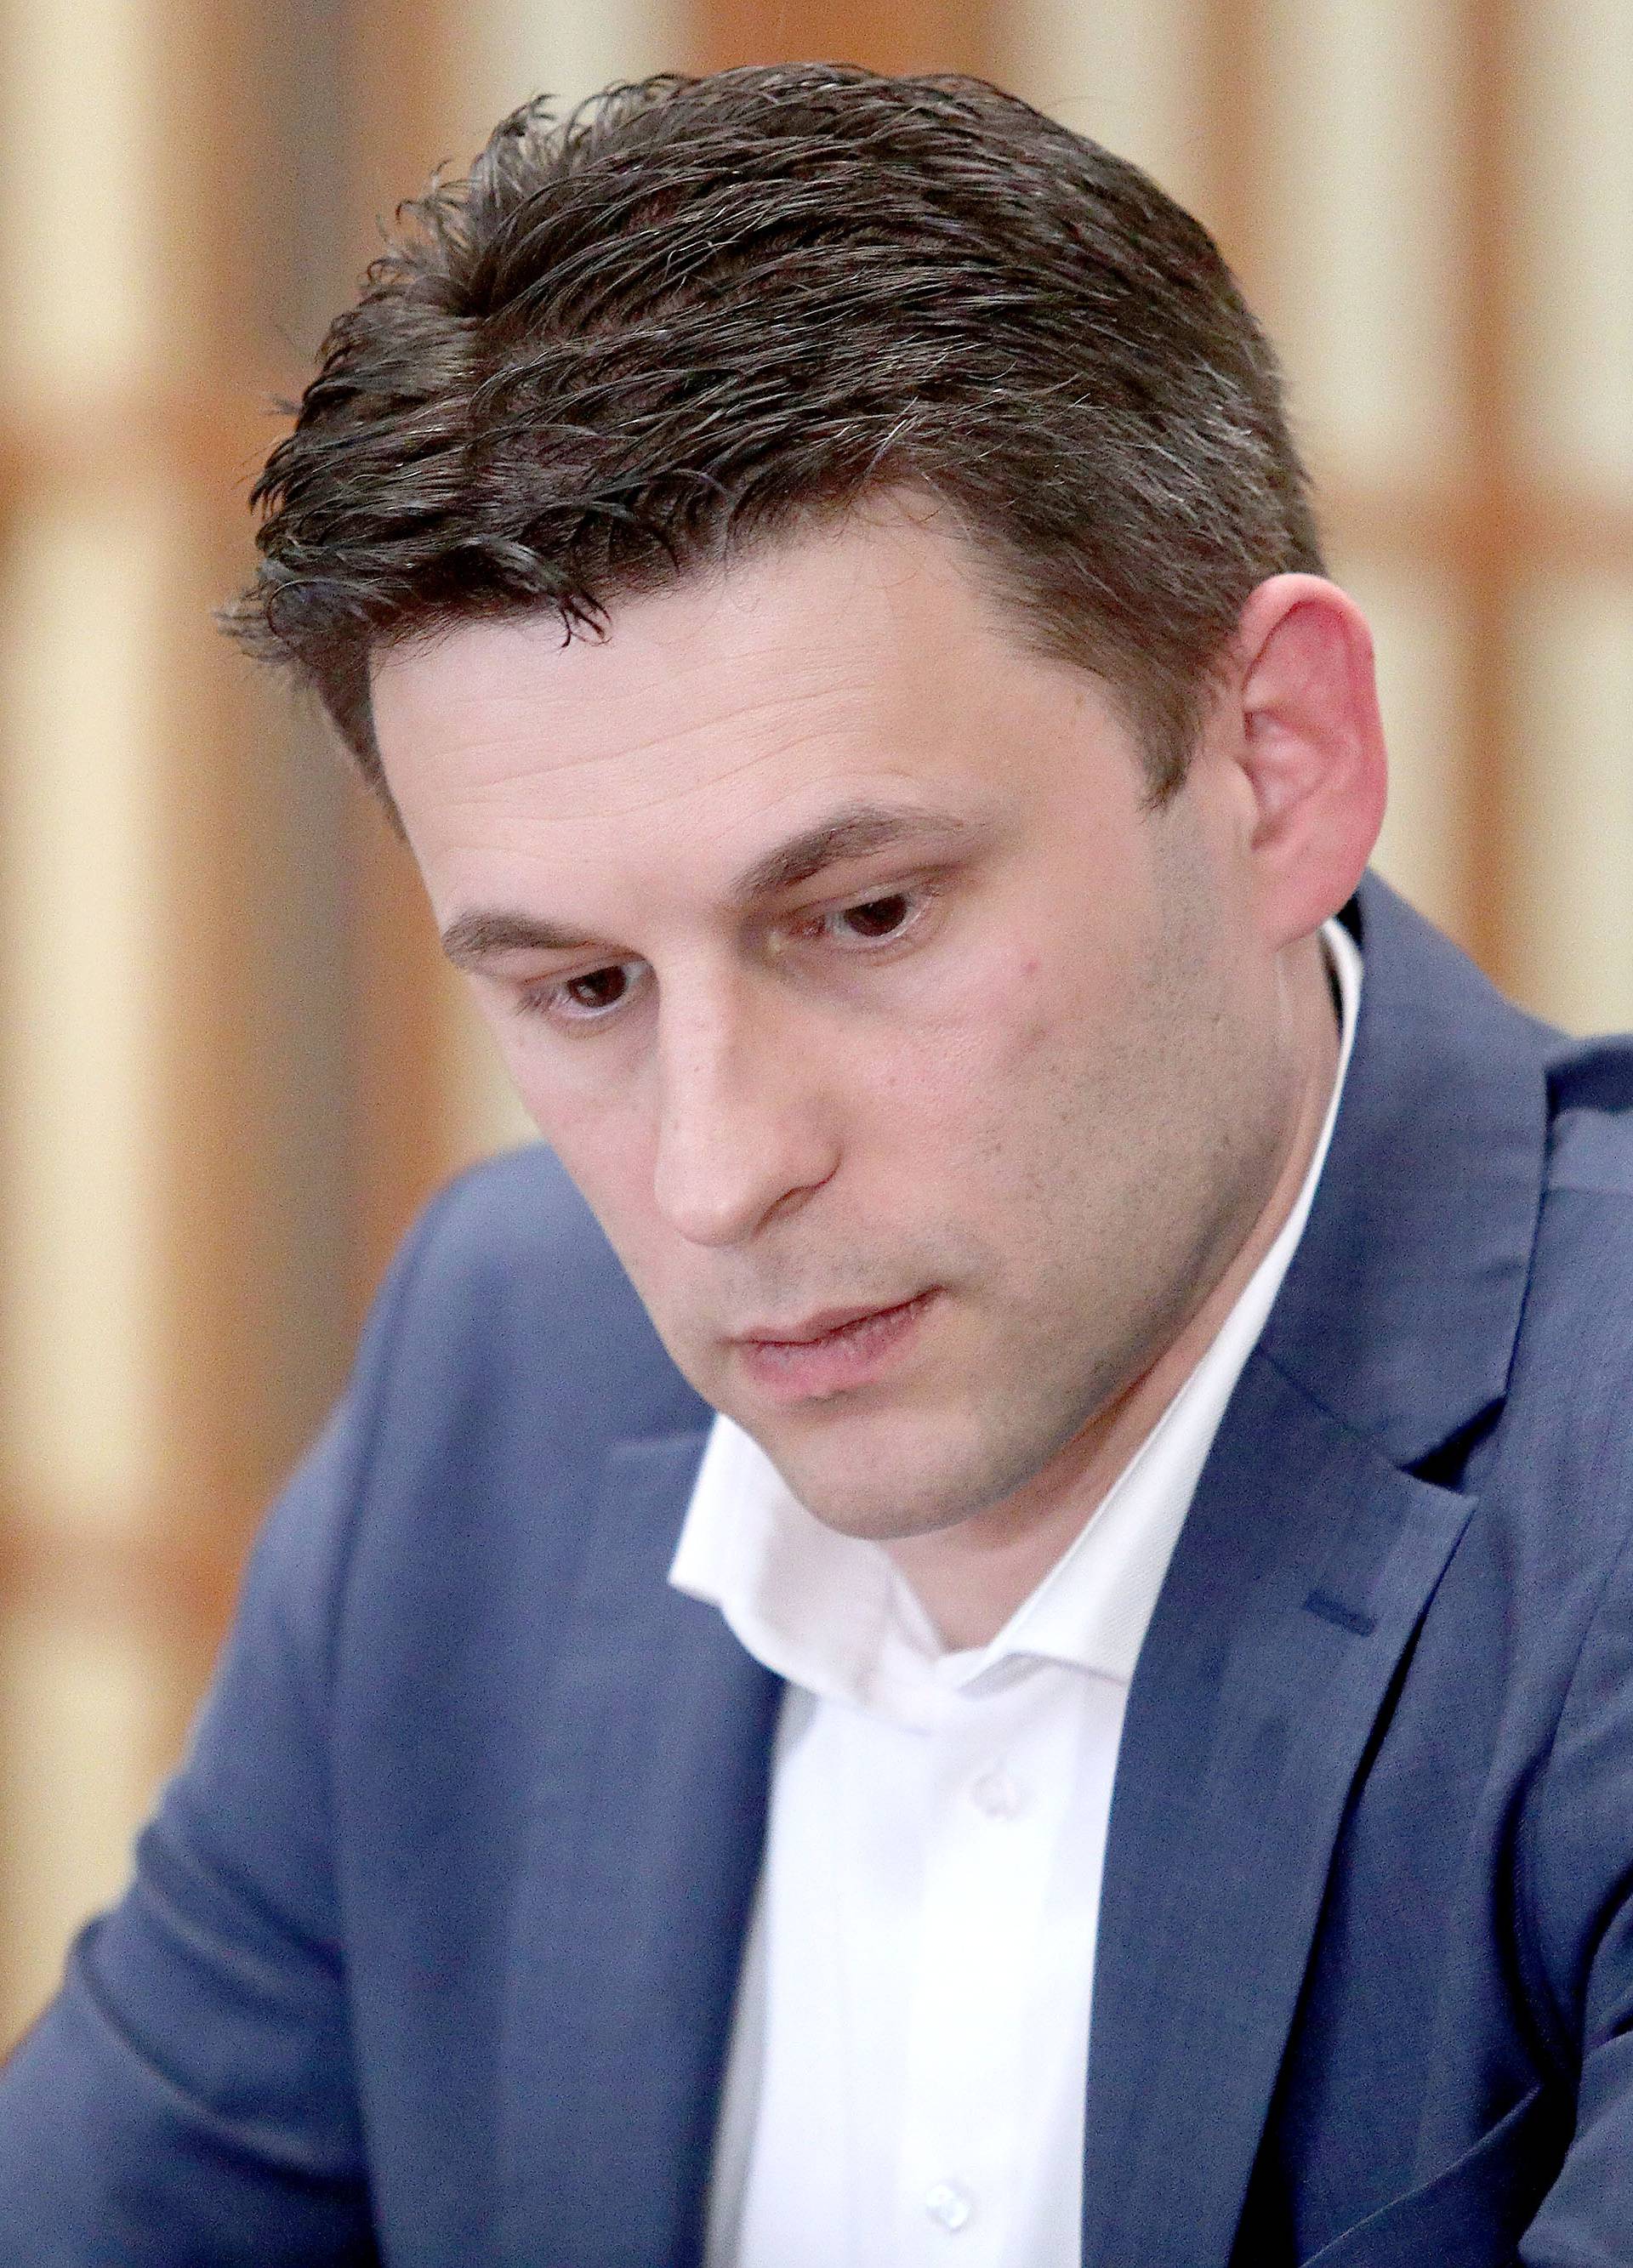 'Trebamo proglasiti isključivi gospodarski pojas u Jadranu'